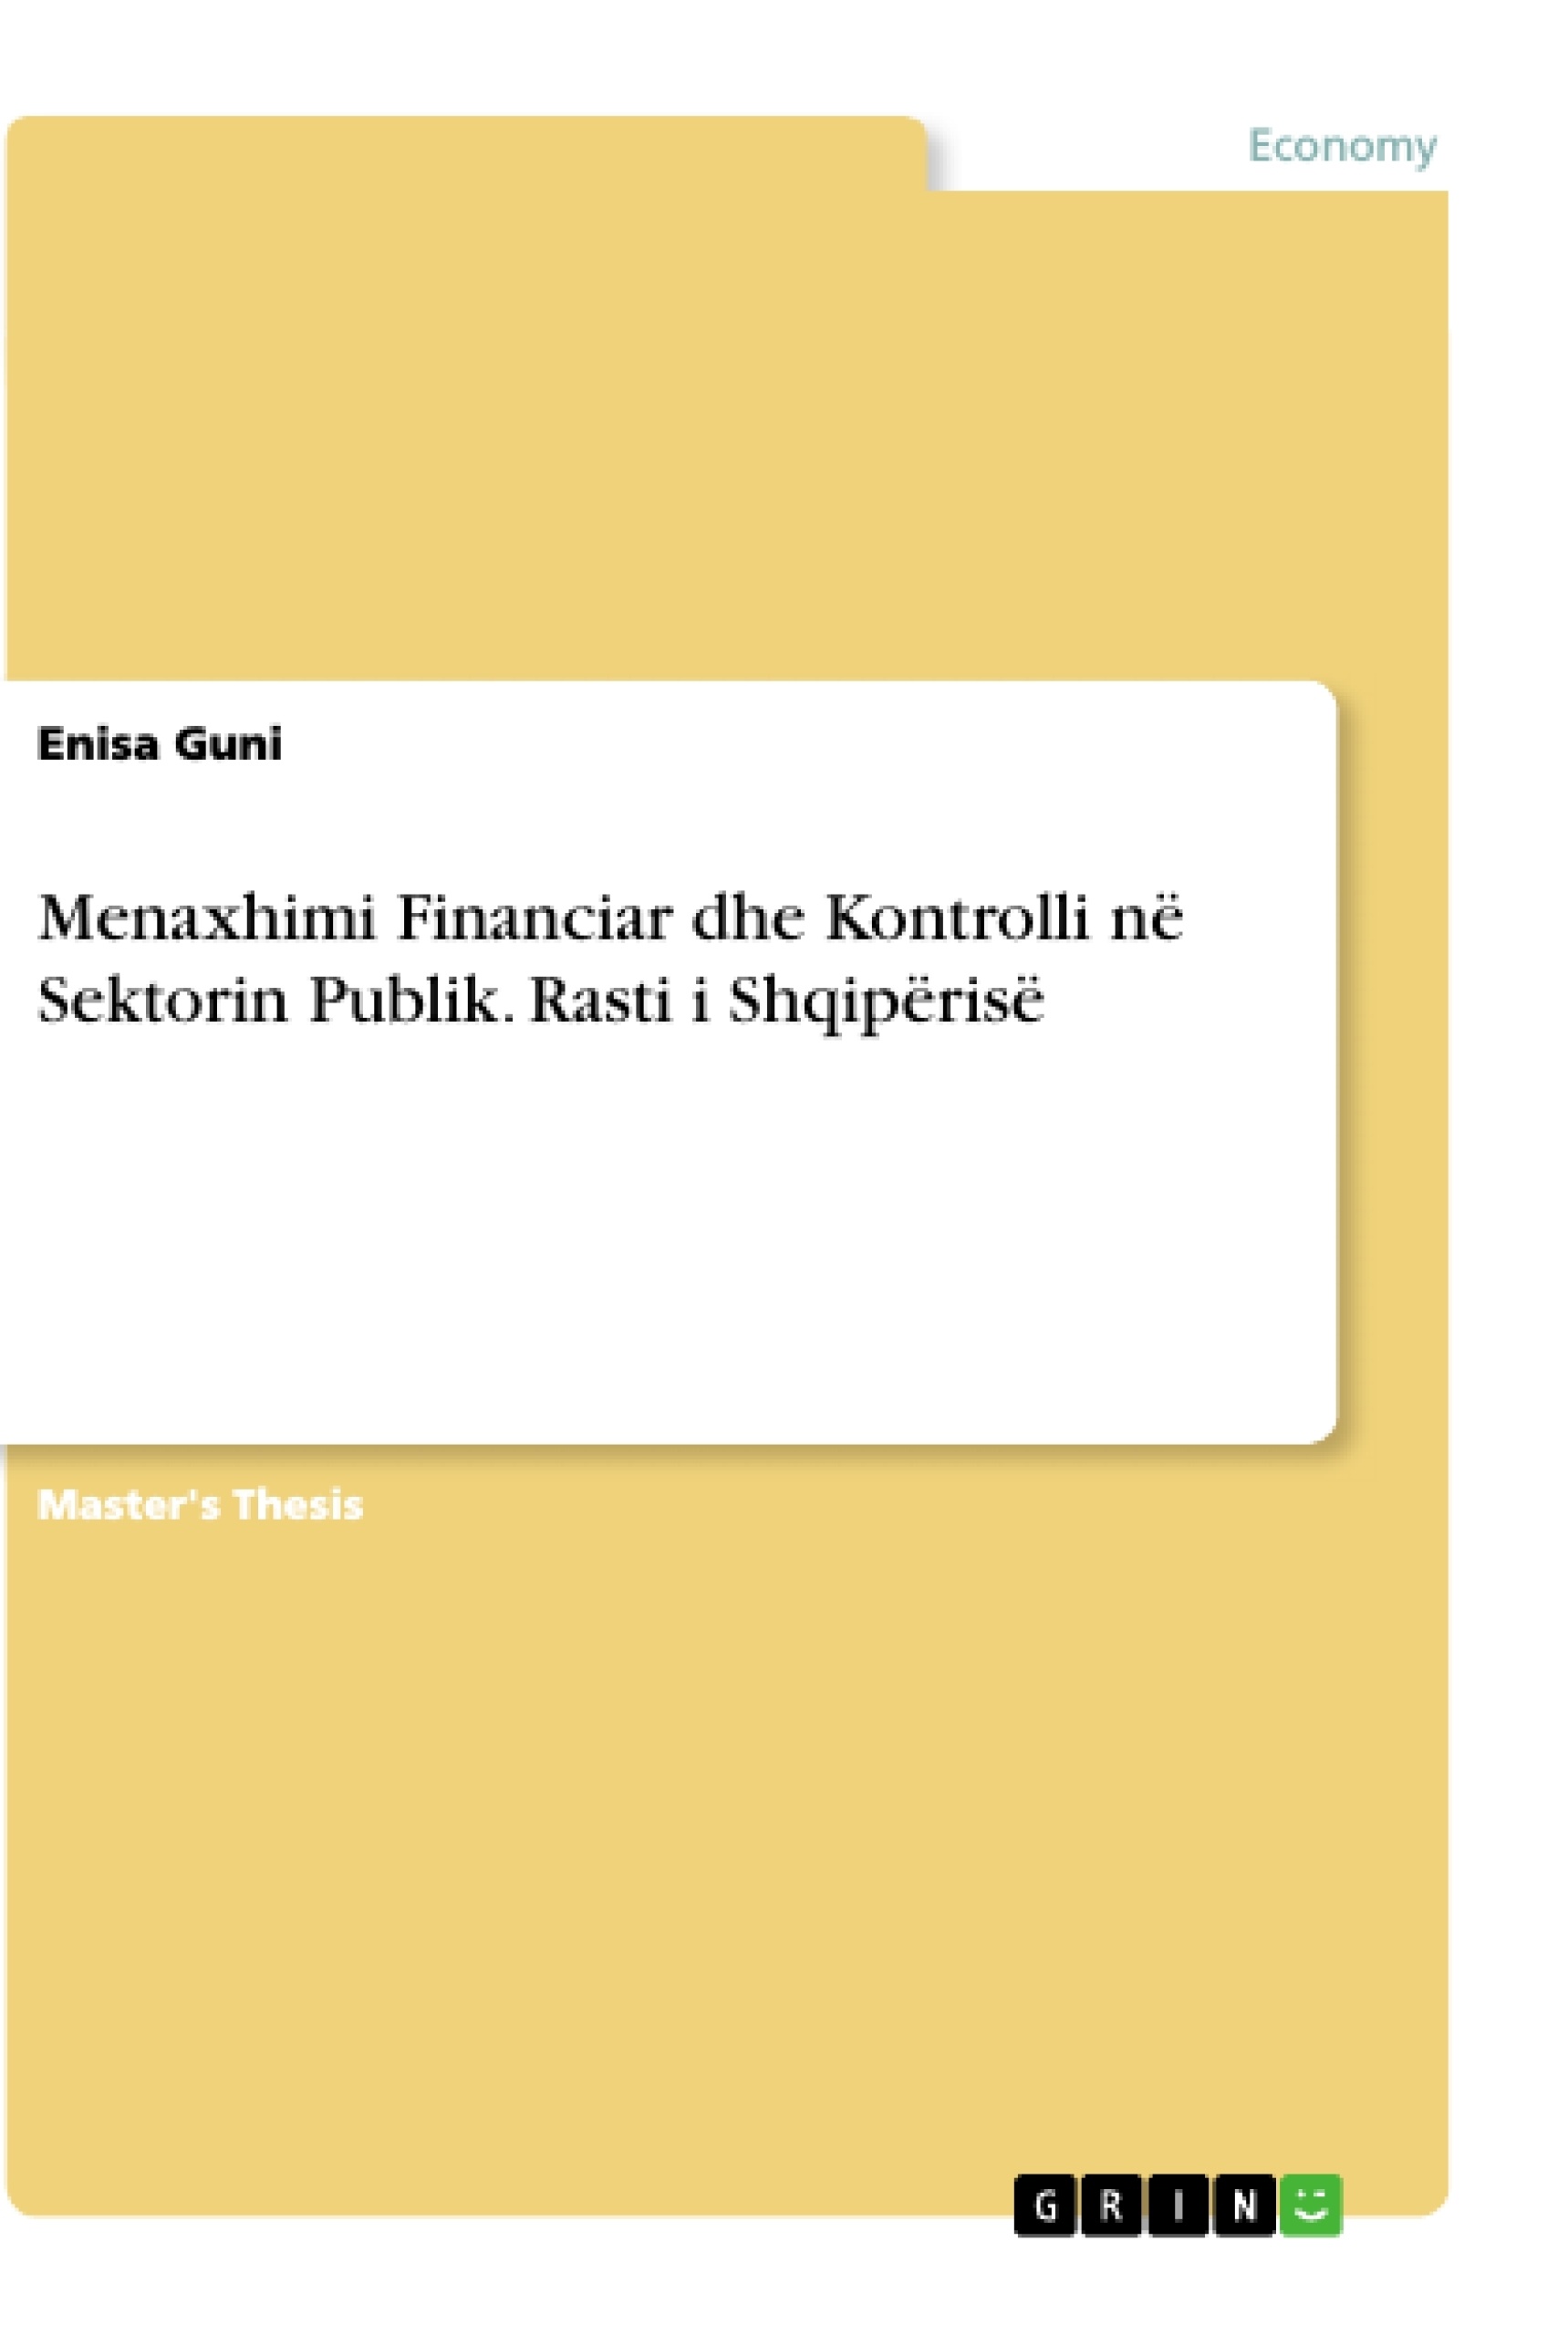 Title: Menaxhimi Financiar dhe Kontrolli në Sektorin Publik. Rasti i Shqipërisë